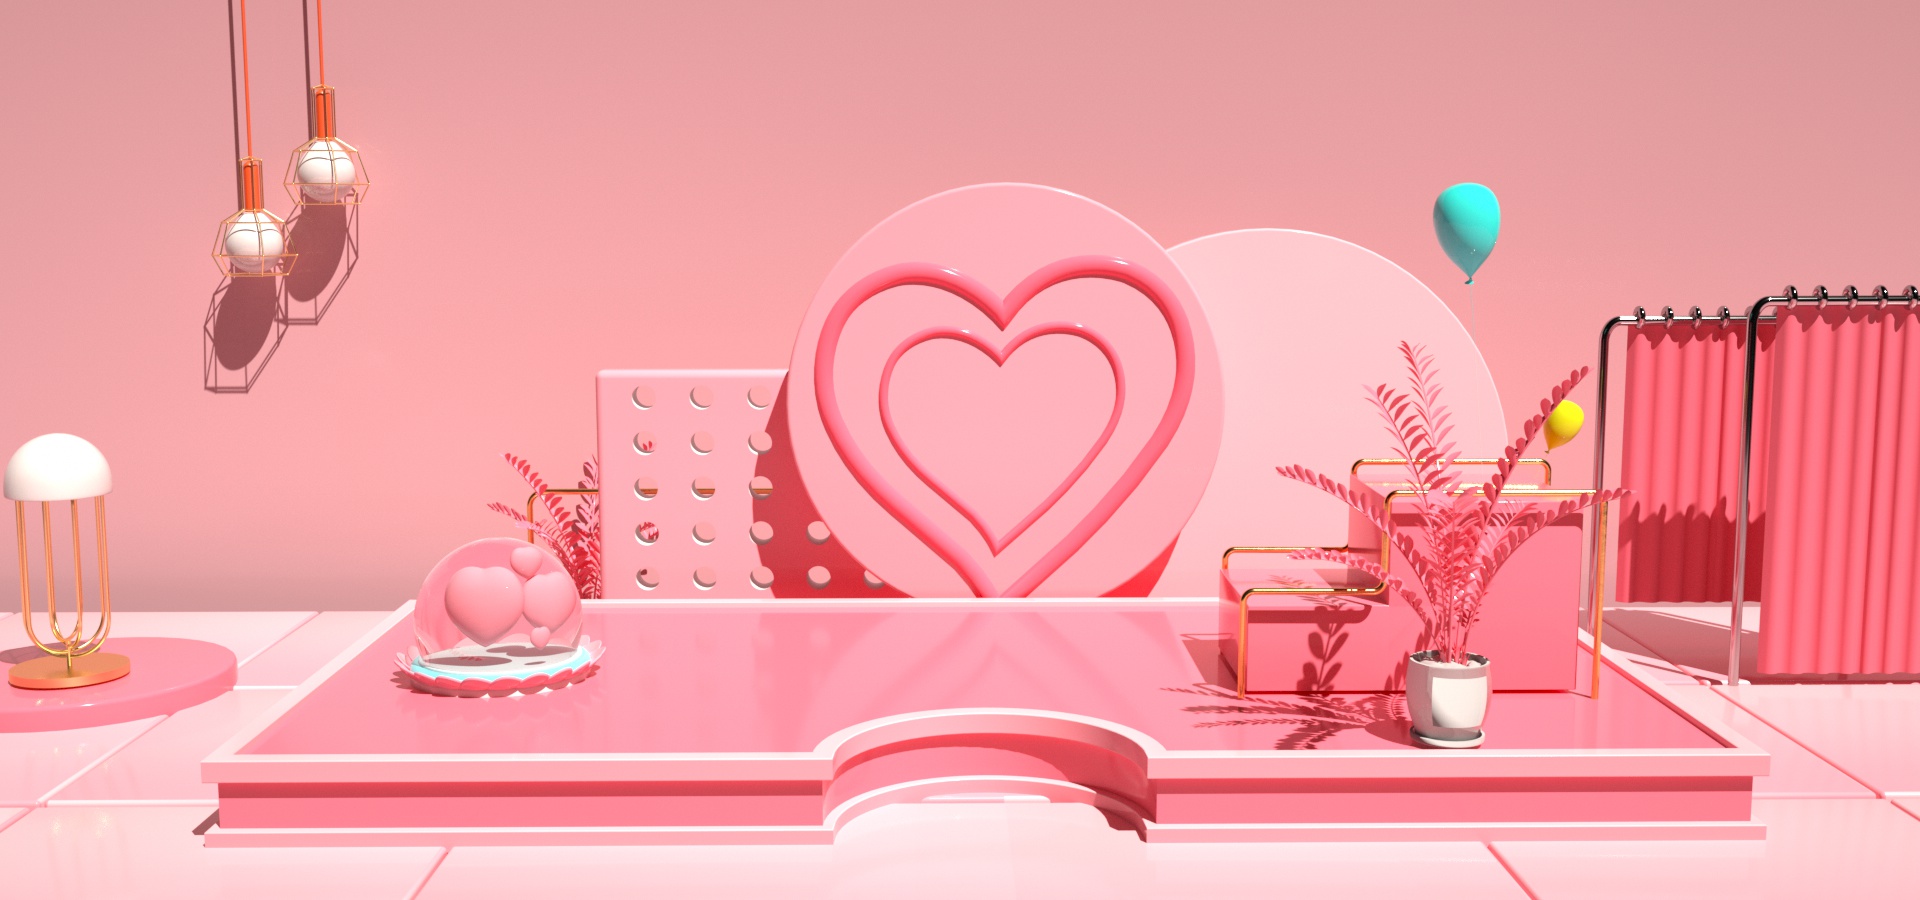 C4D模型情人节电商促销粉色场景014.jpg